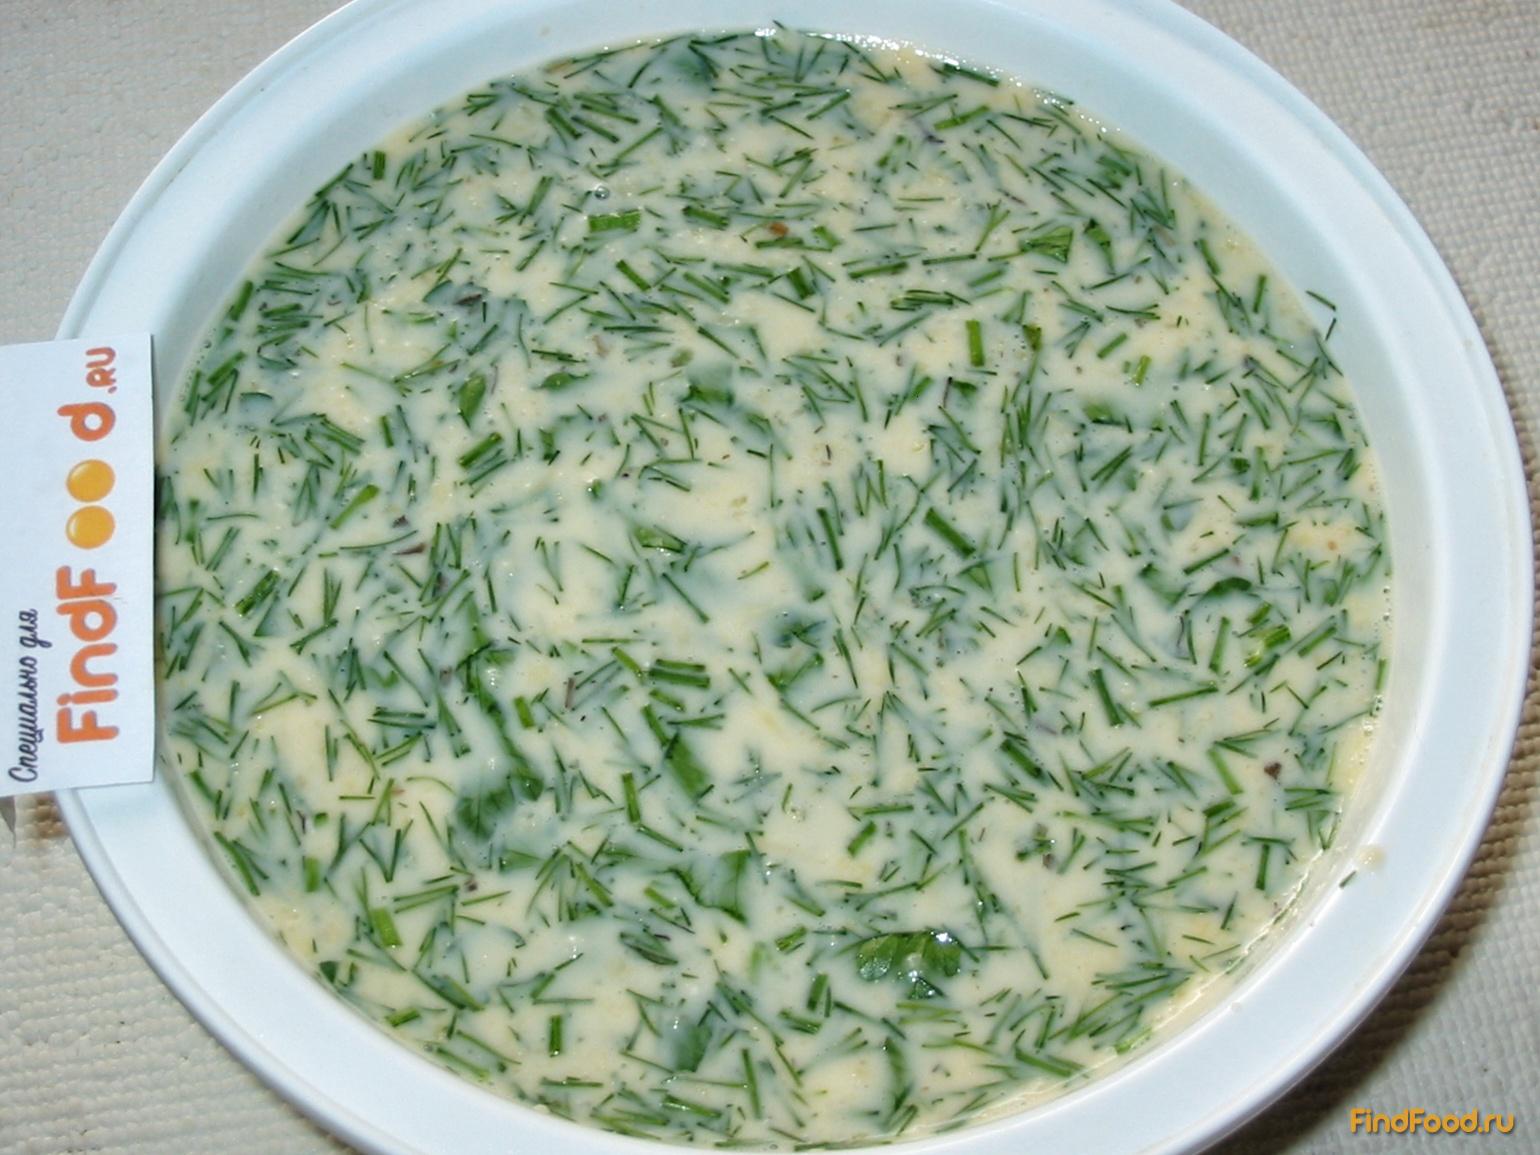 Омлет с зеленью и сыром рецепт с фото 5-го шага 